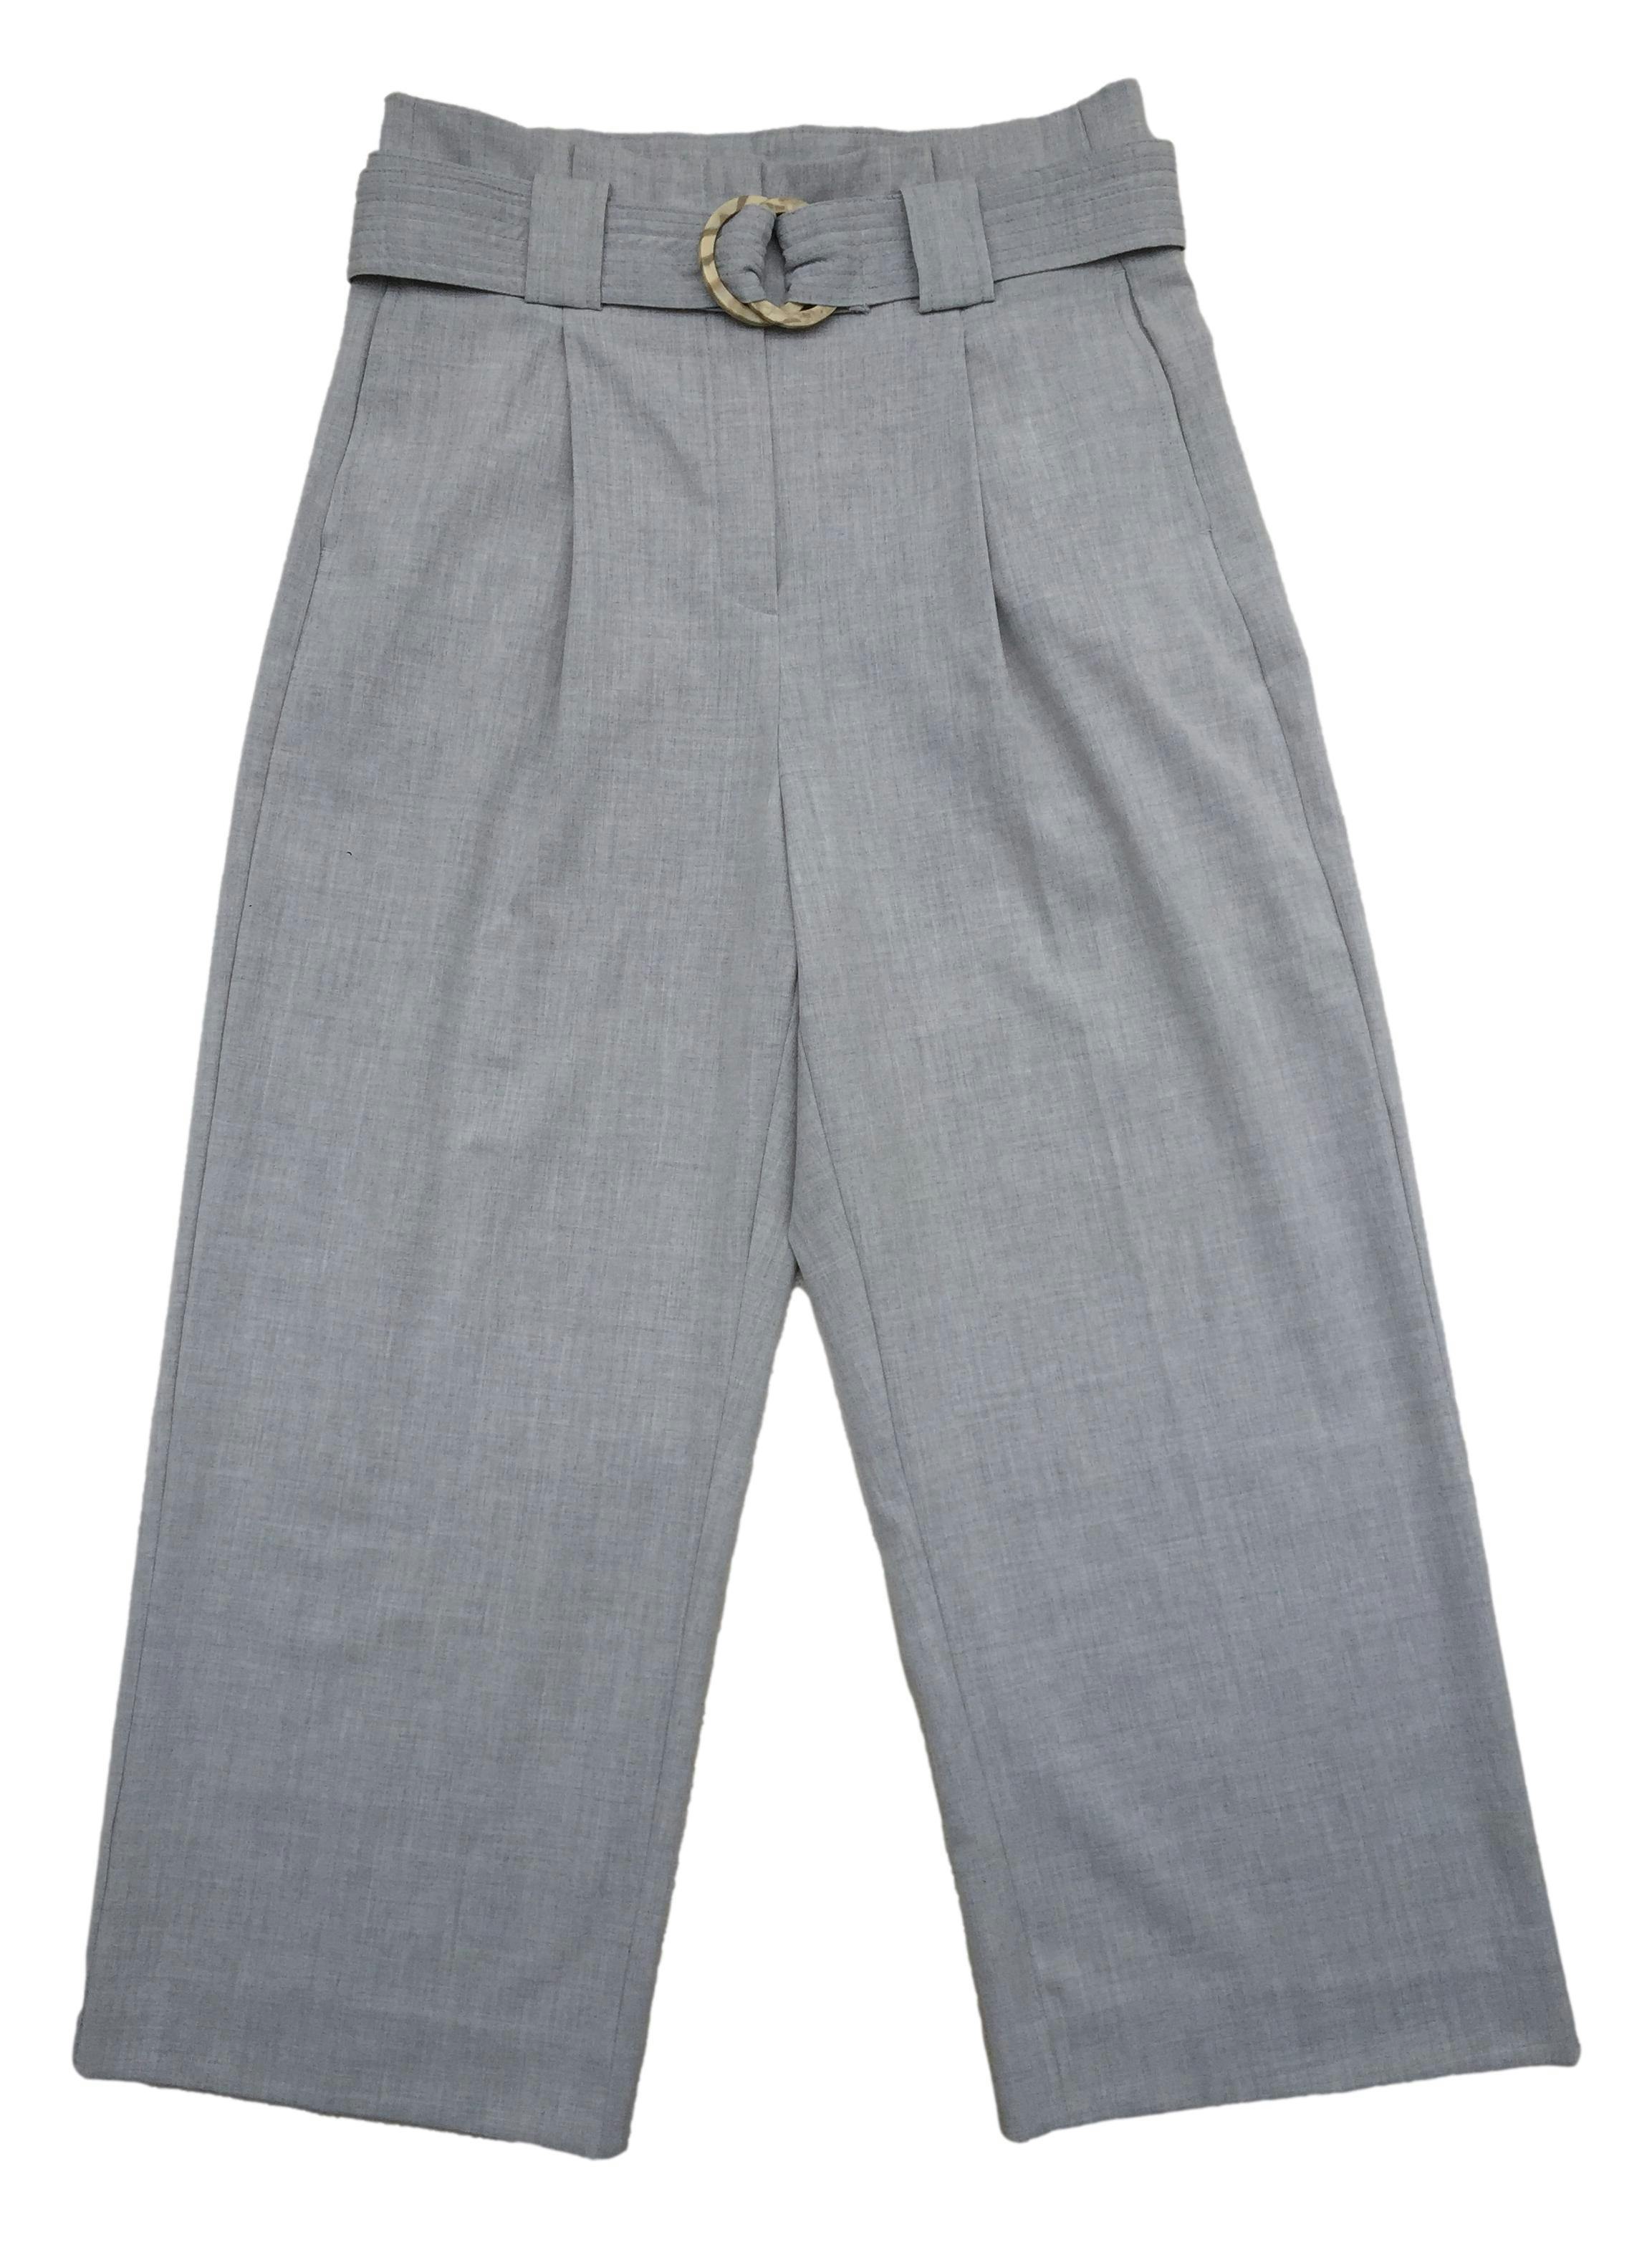 Pantalón Mango gris tipo sastre, correa incluída, cierre y botón delantero. Cintura: 76cm, Tiro: 36cm, Largo: 94cm.